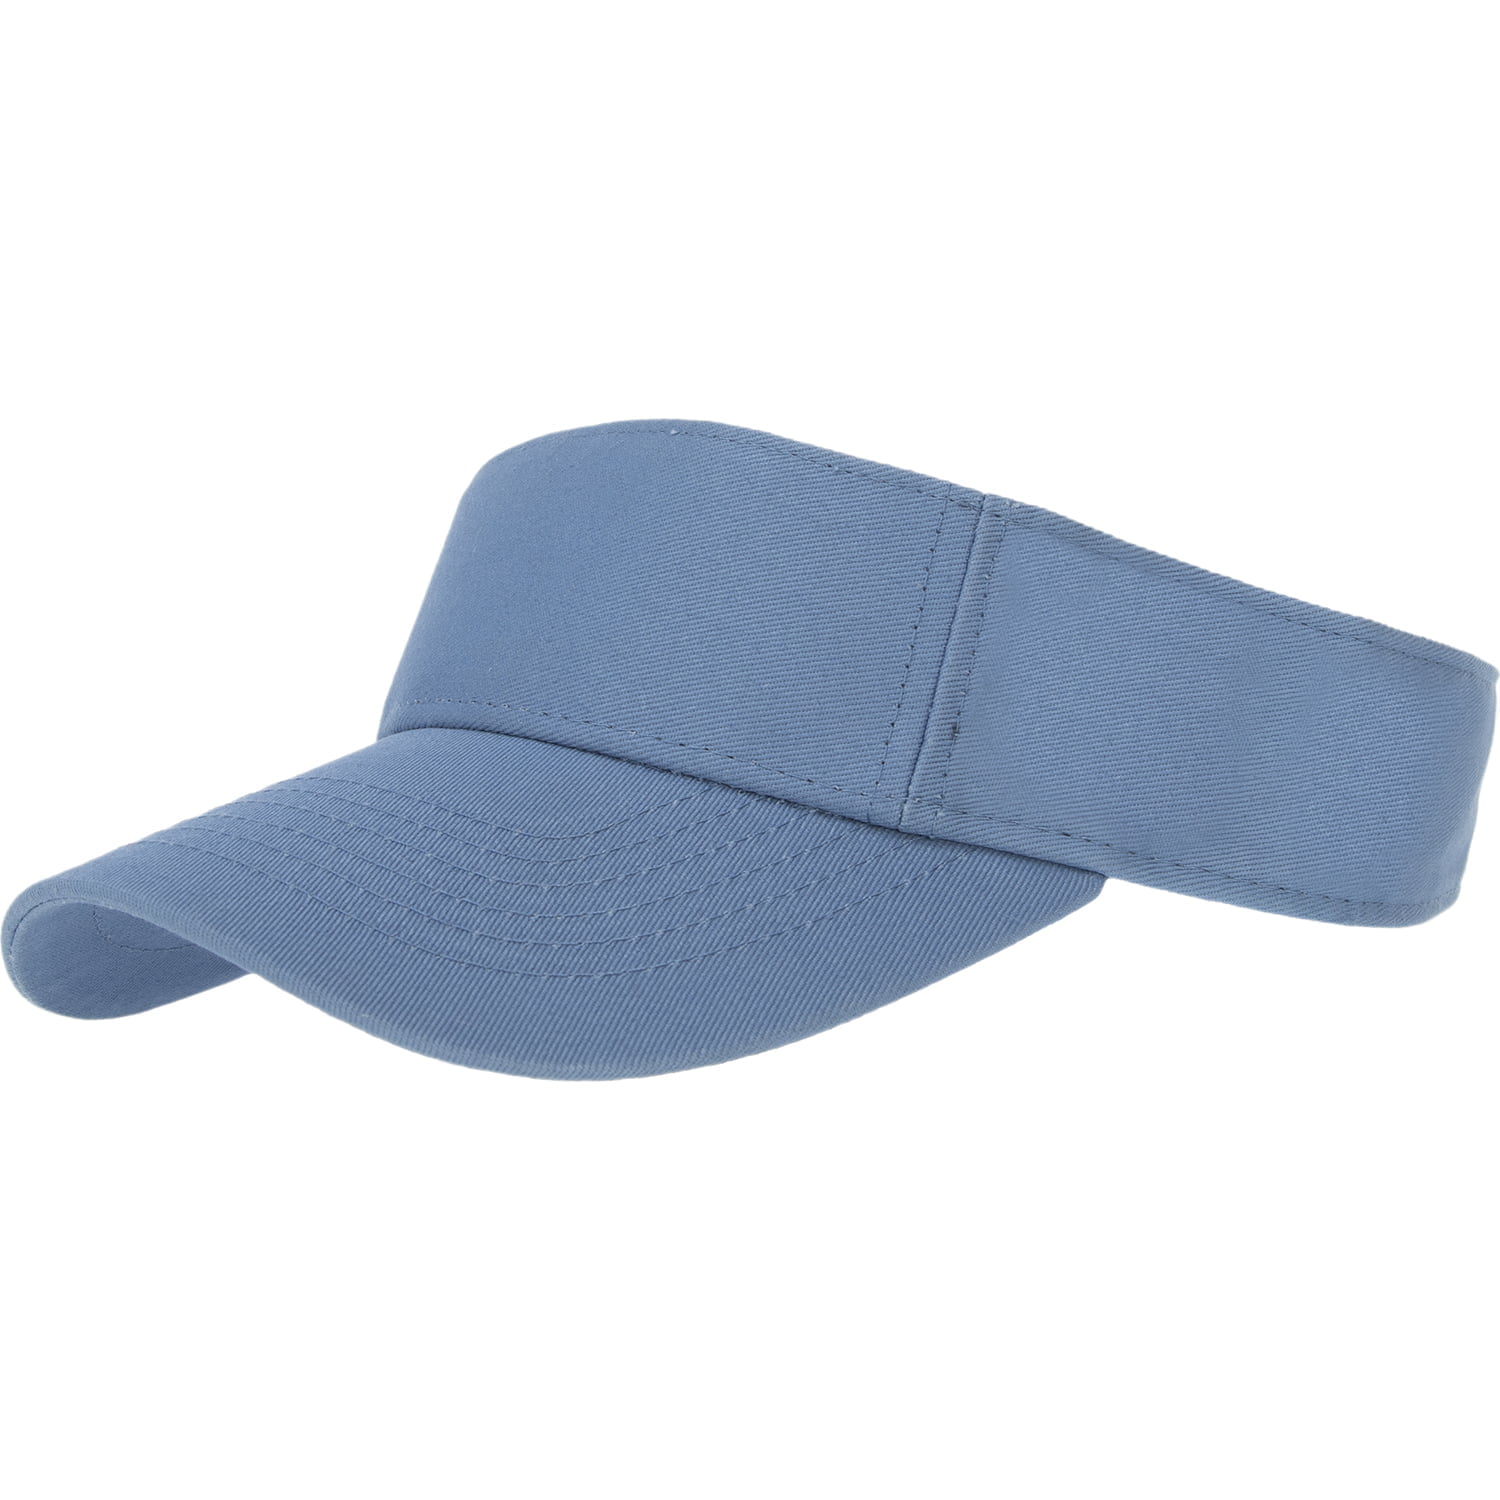 1pc Light Blue Sun Visor Hat - Single Piece